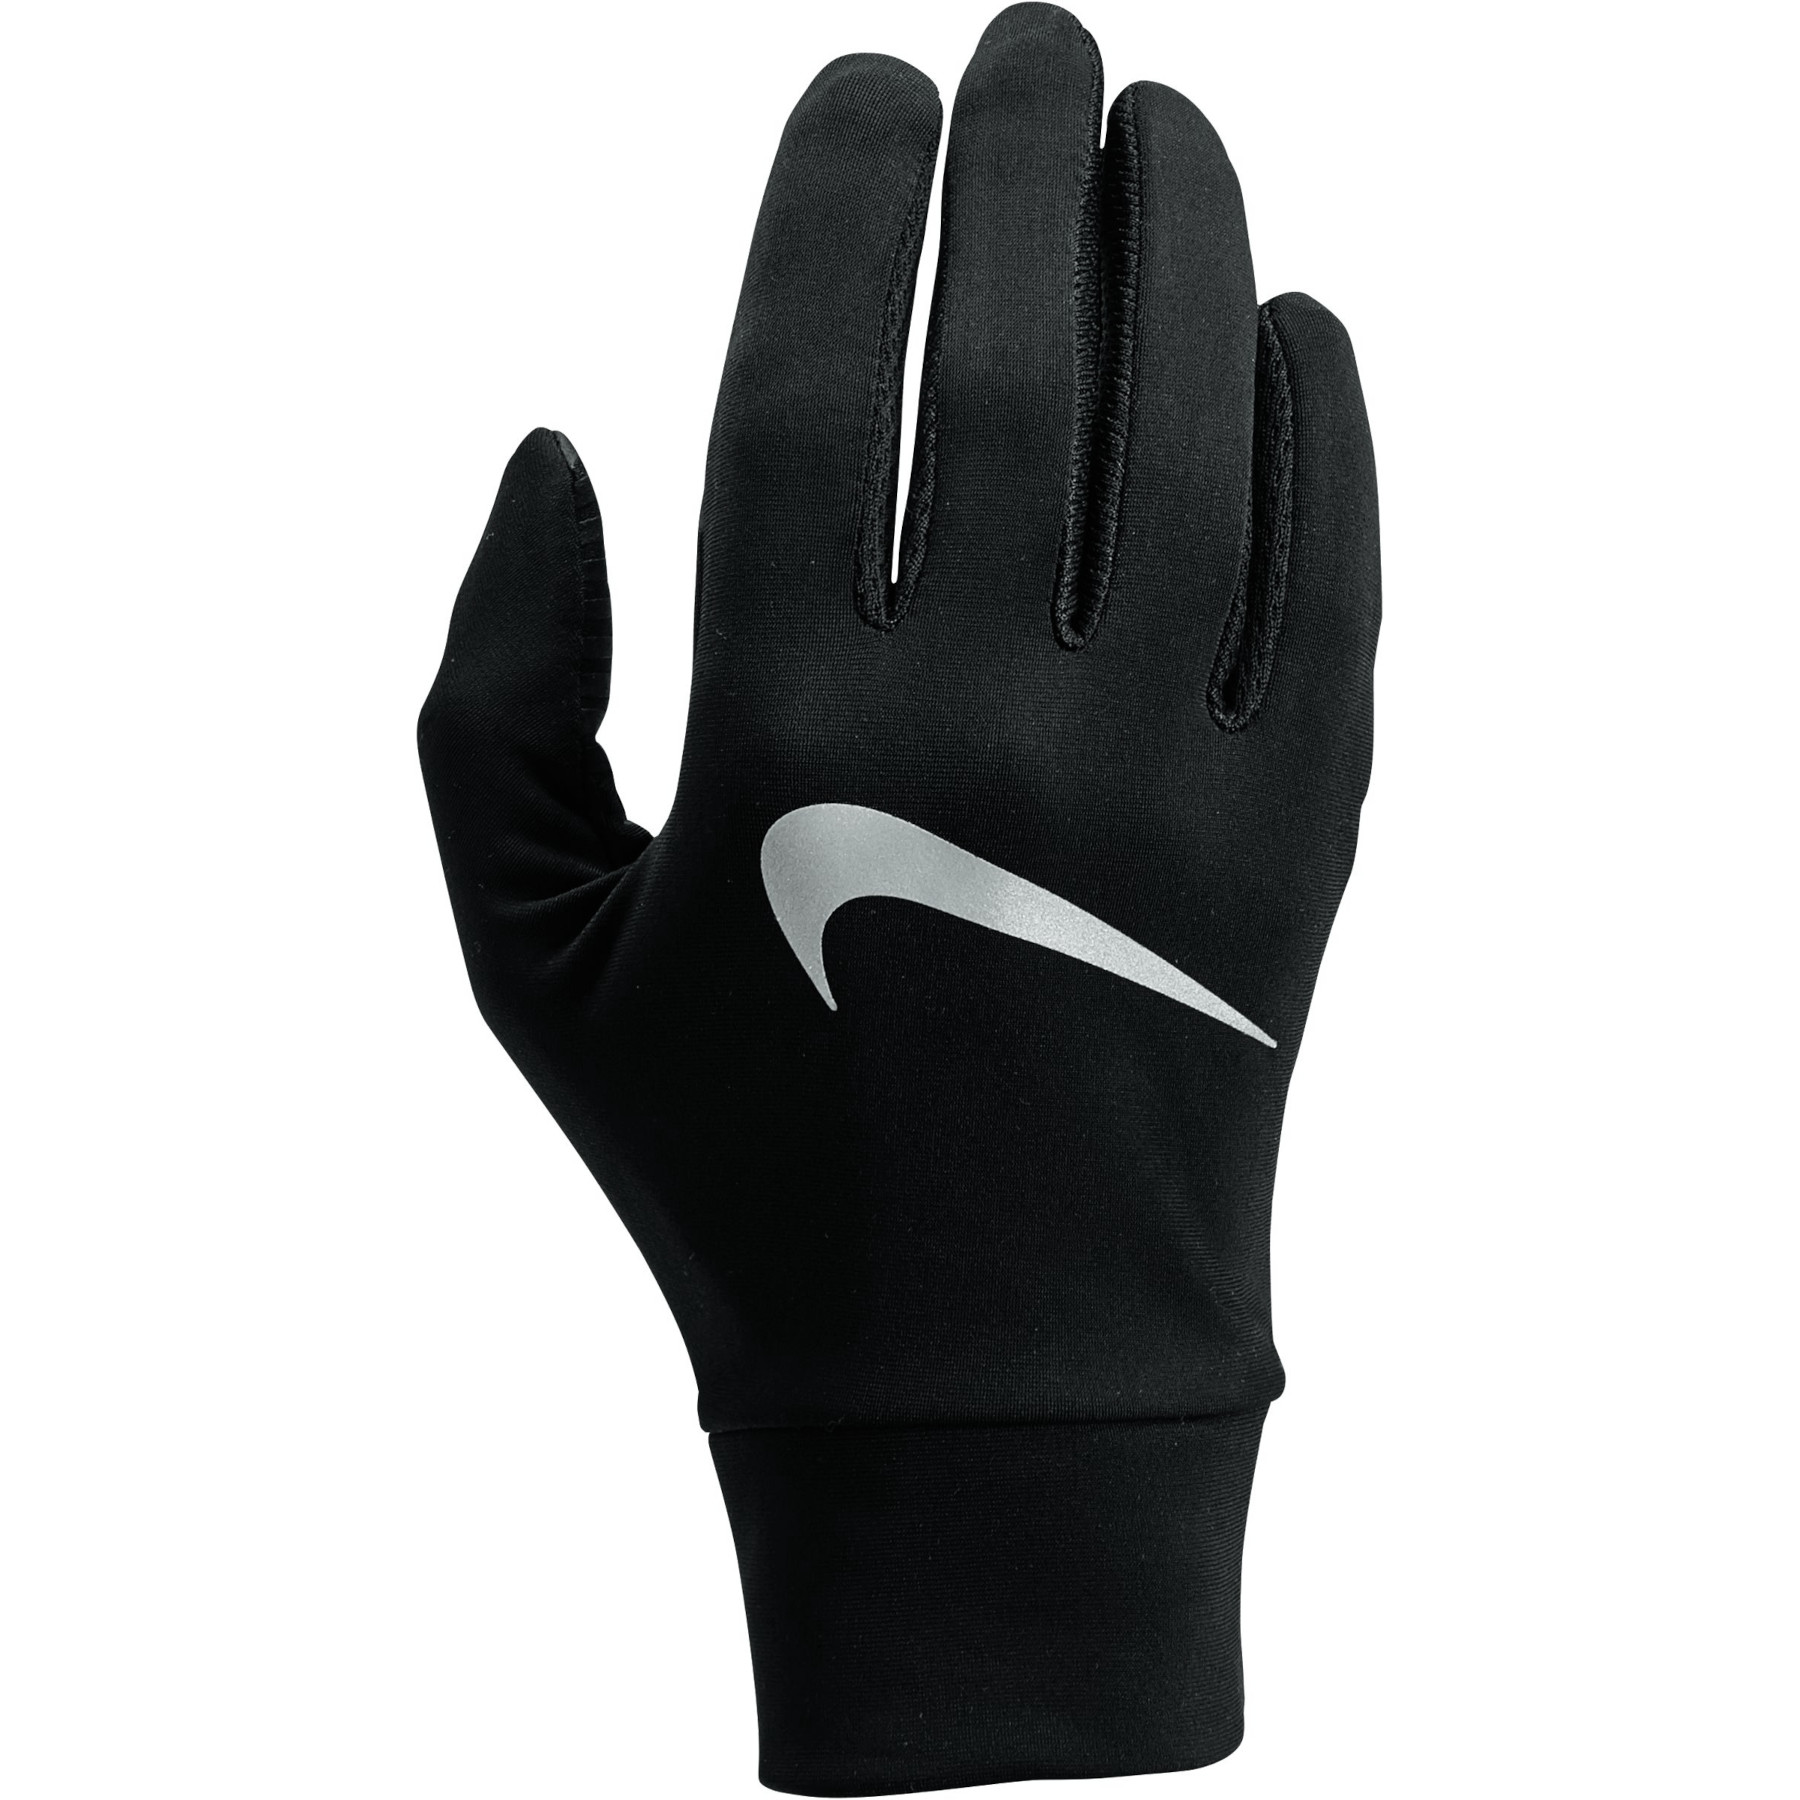 Produktbild von Nike Lightweight Tech Damen Laufhandschuhe - black/black/silver 082